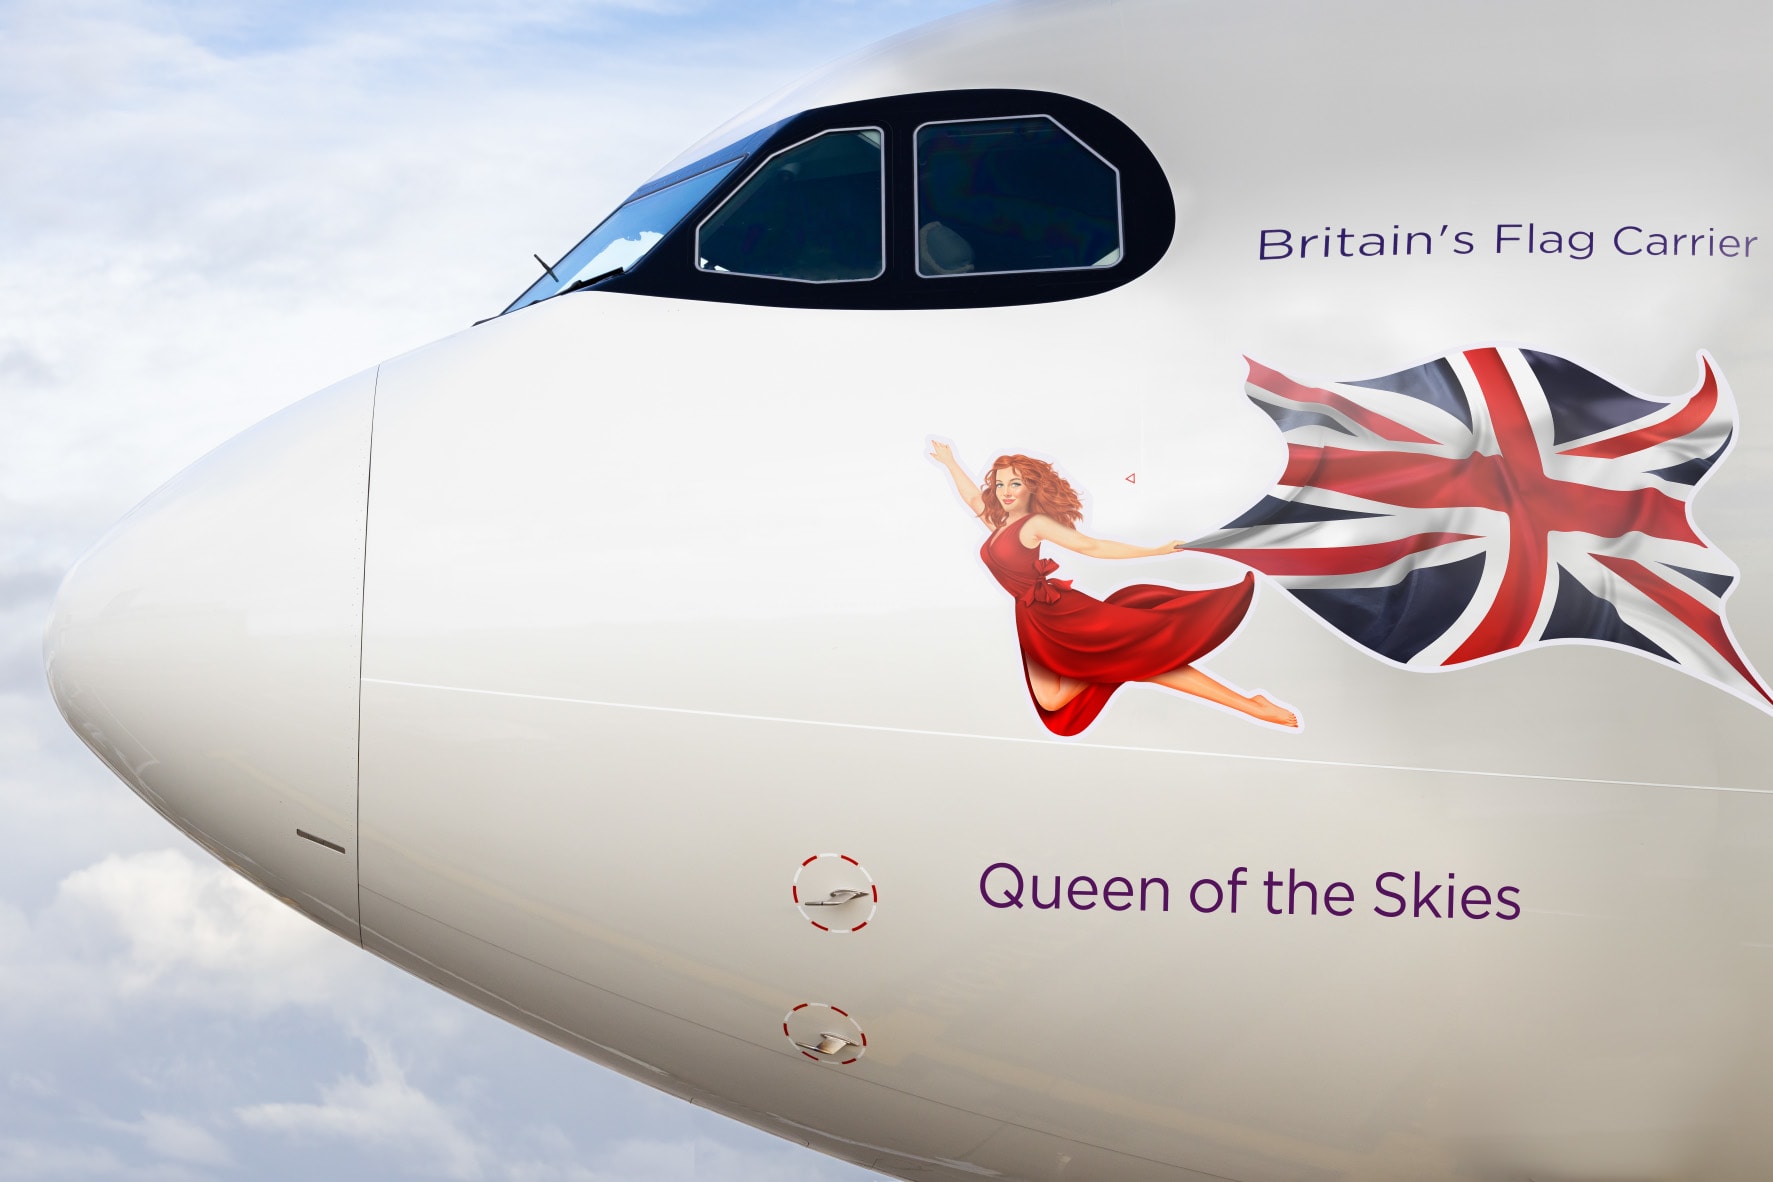 "فيرجن أتلانتيك" تُسمّي طائرة تيمنًا بالملكة إليزابيث الراحلة